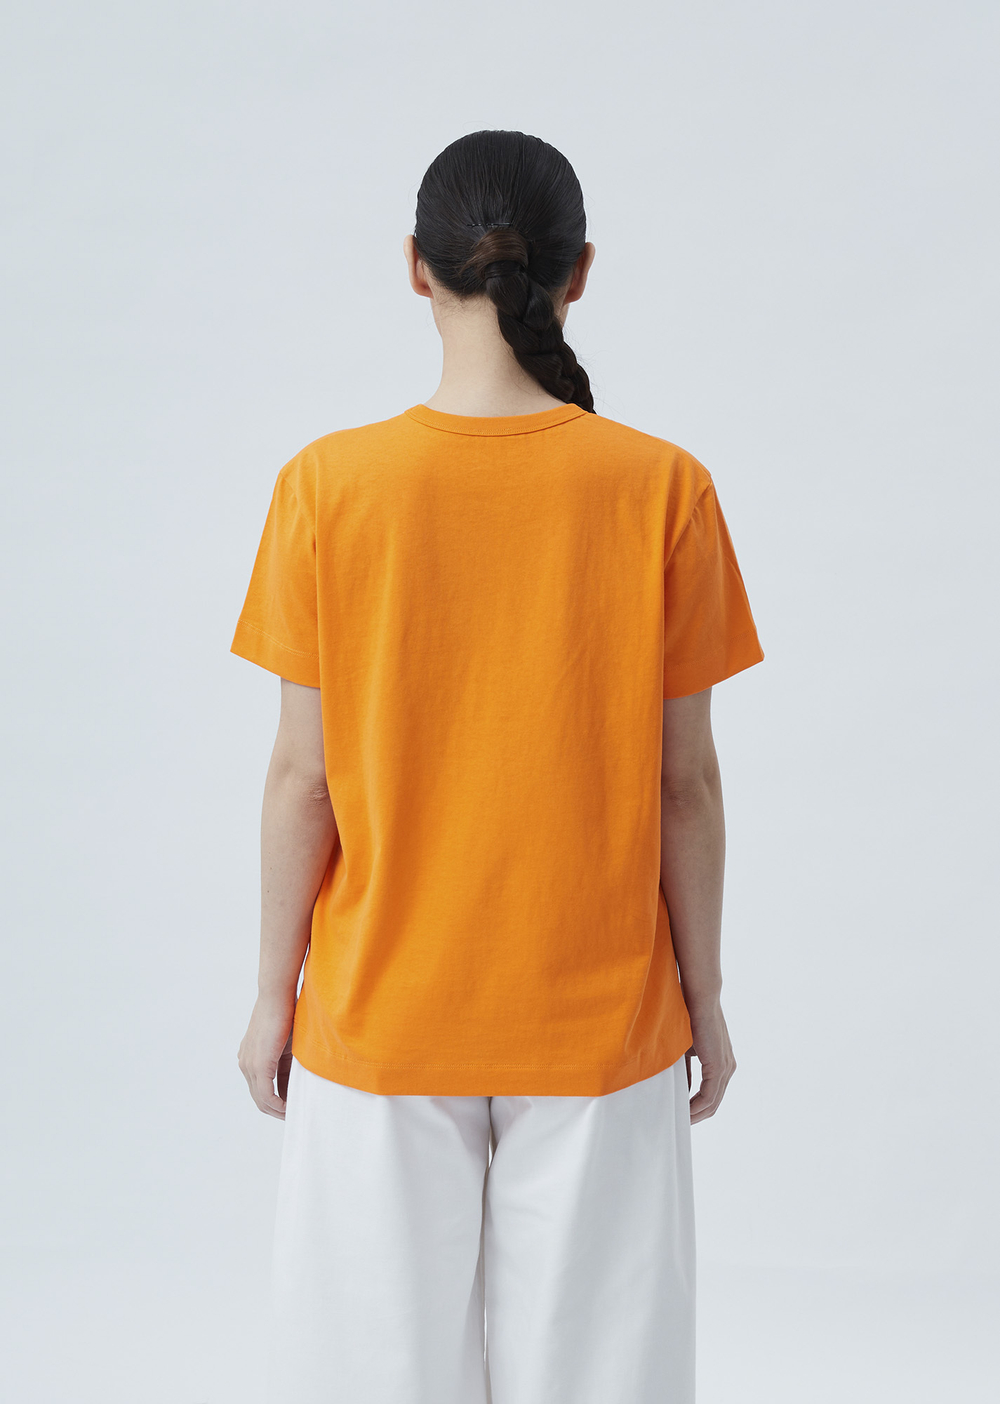 Женская футболка с вышивкой оранжевый р.XXL